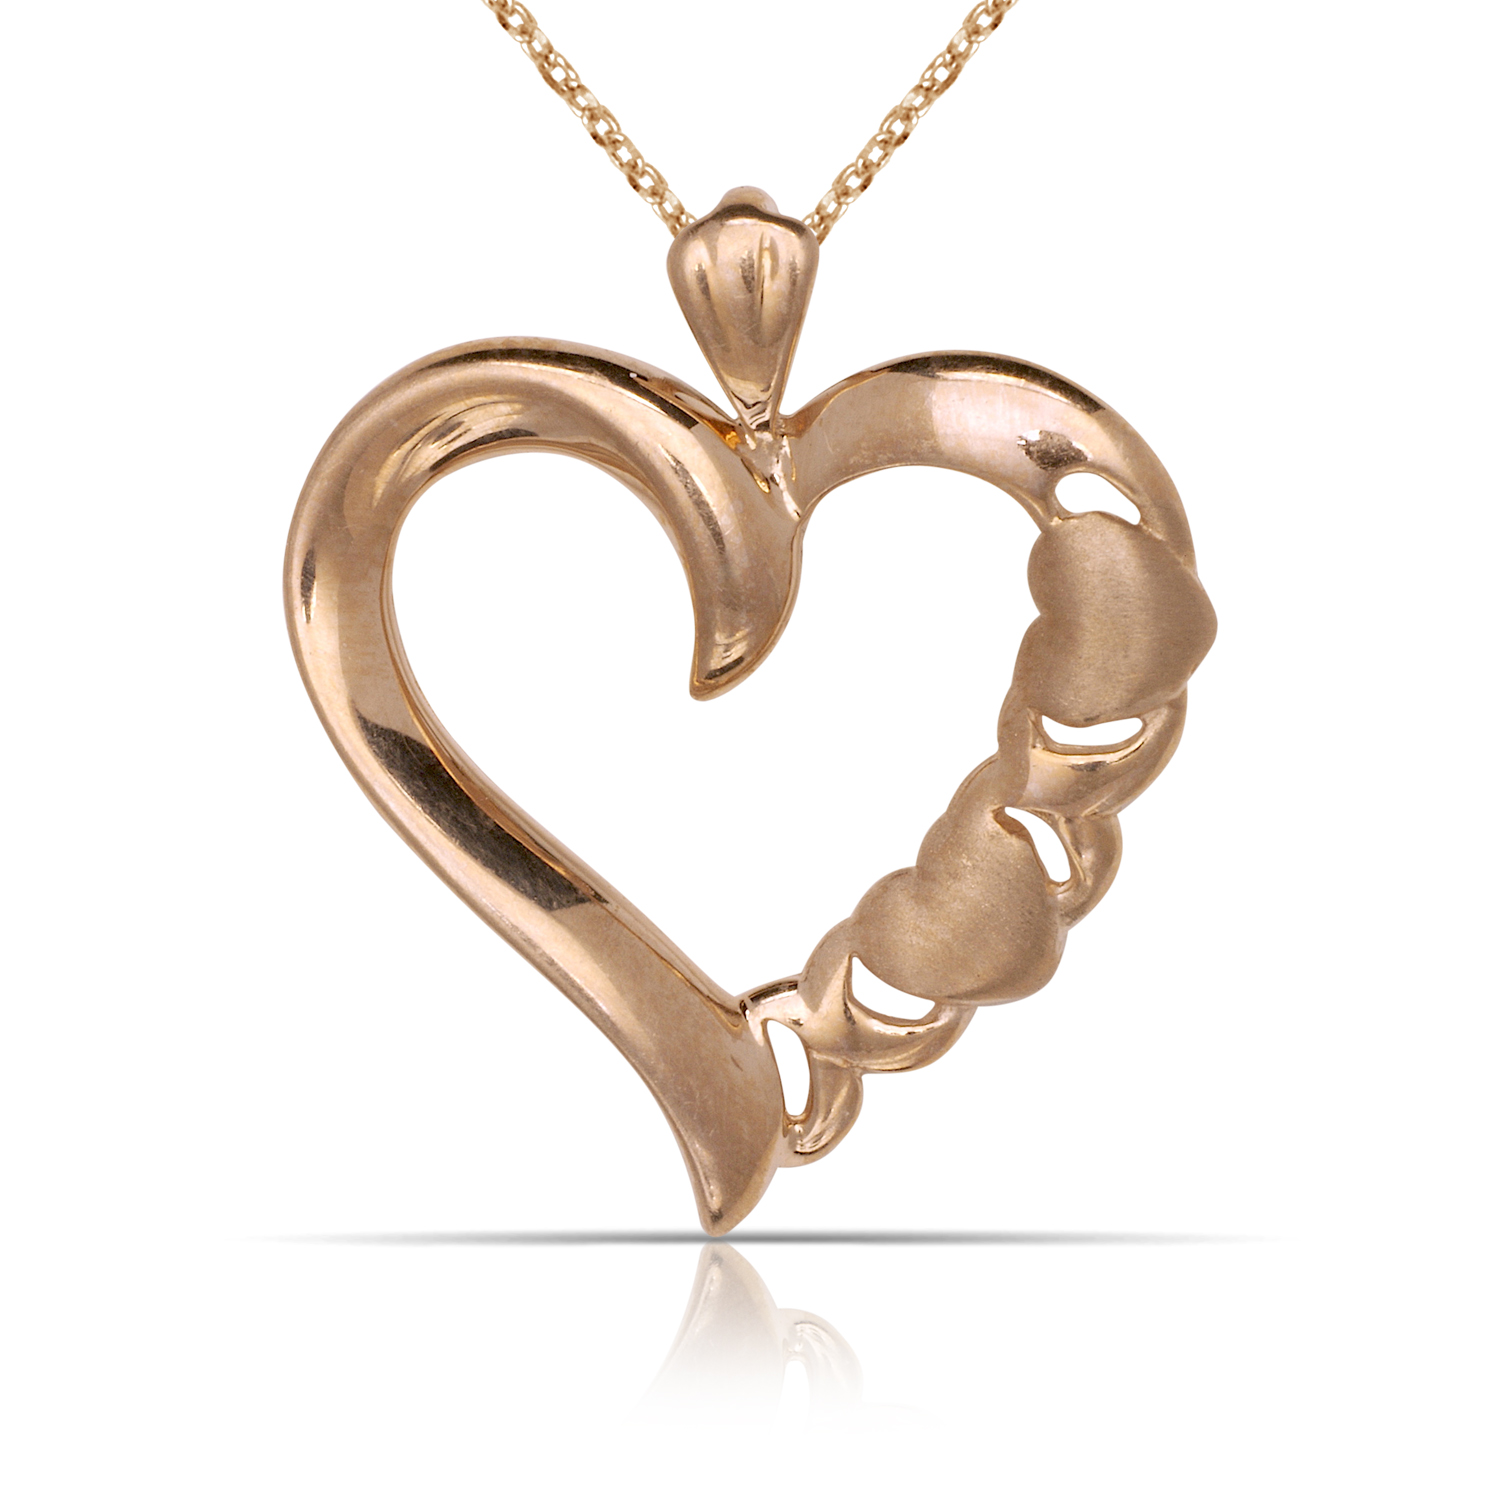 
14k Rose Gold Heart and Hug Open Heart Pendant
